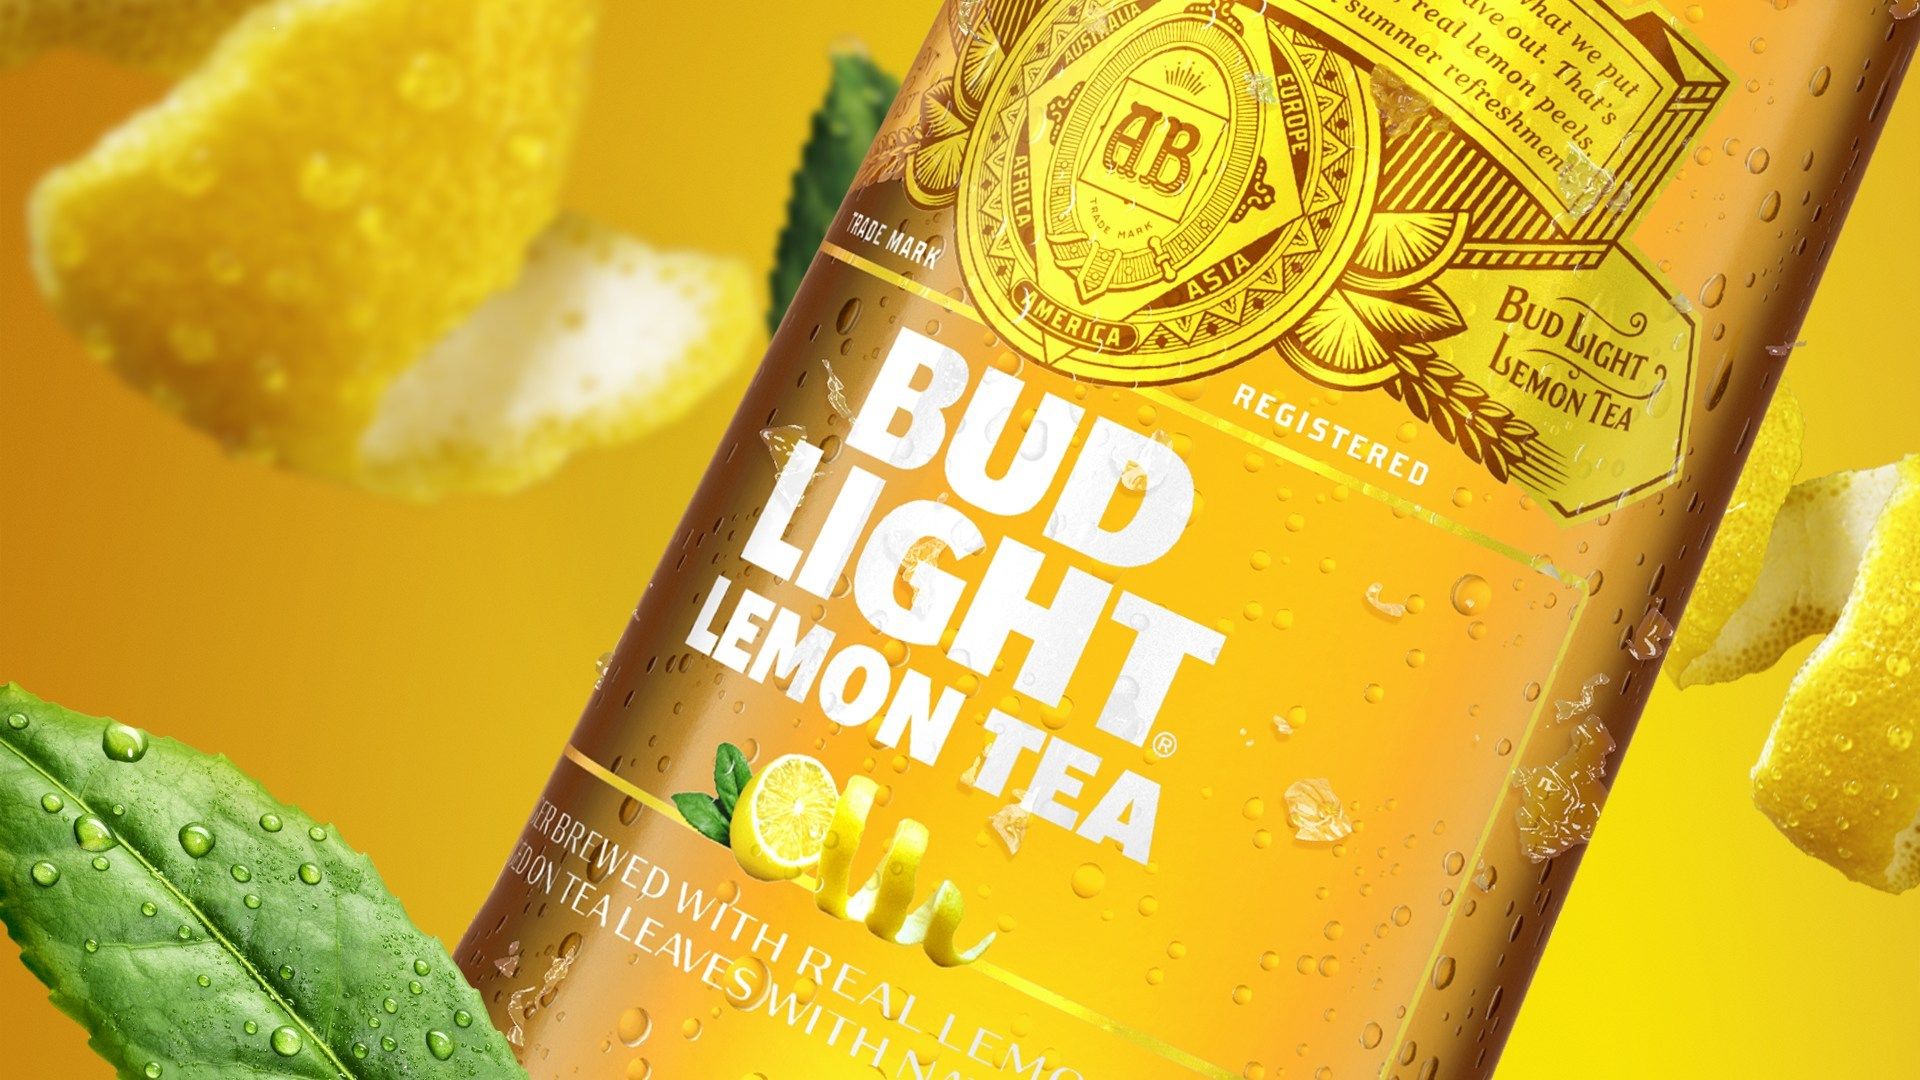 Bud Light Lemon Tea Arrives Just in Time for Summer